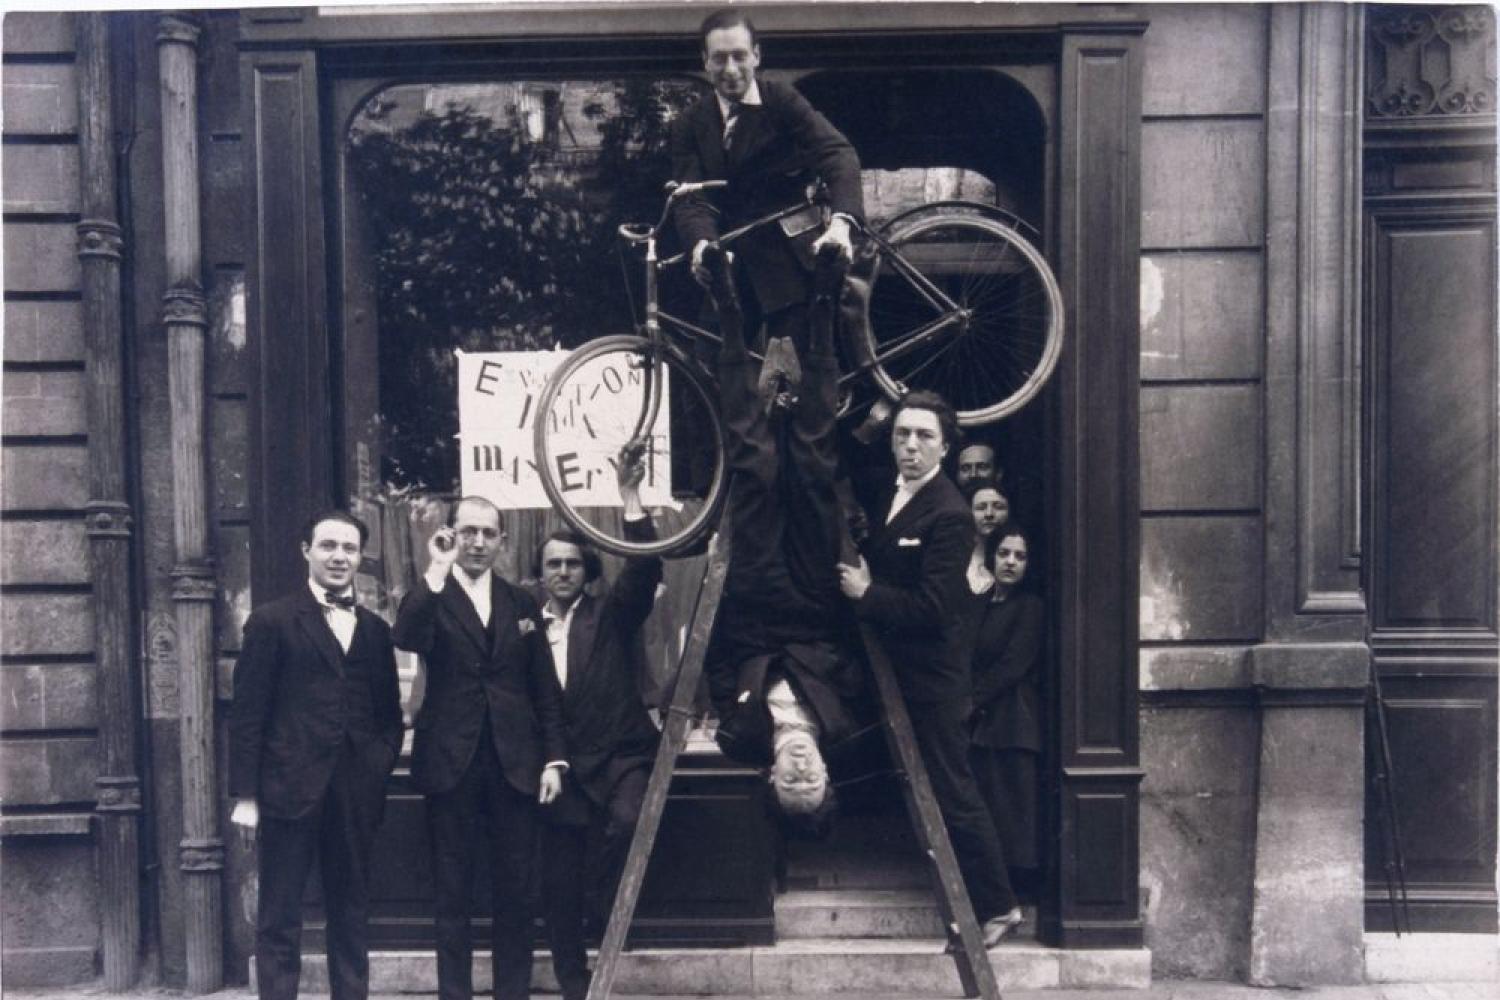 Photographie du groupe surréaliste lors du vernissage de l'exposition « Dada Max Ernst », le 2 mai 1921 -  - Auteur inconnu © Chancellerie des Universités de Paris - BLJD, Paris / cliché © BnF / Suzanne Nagy